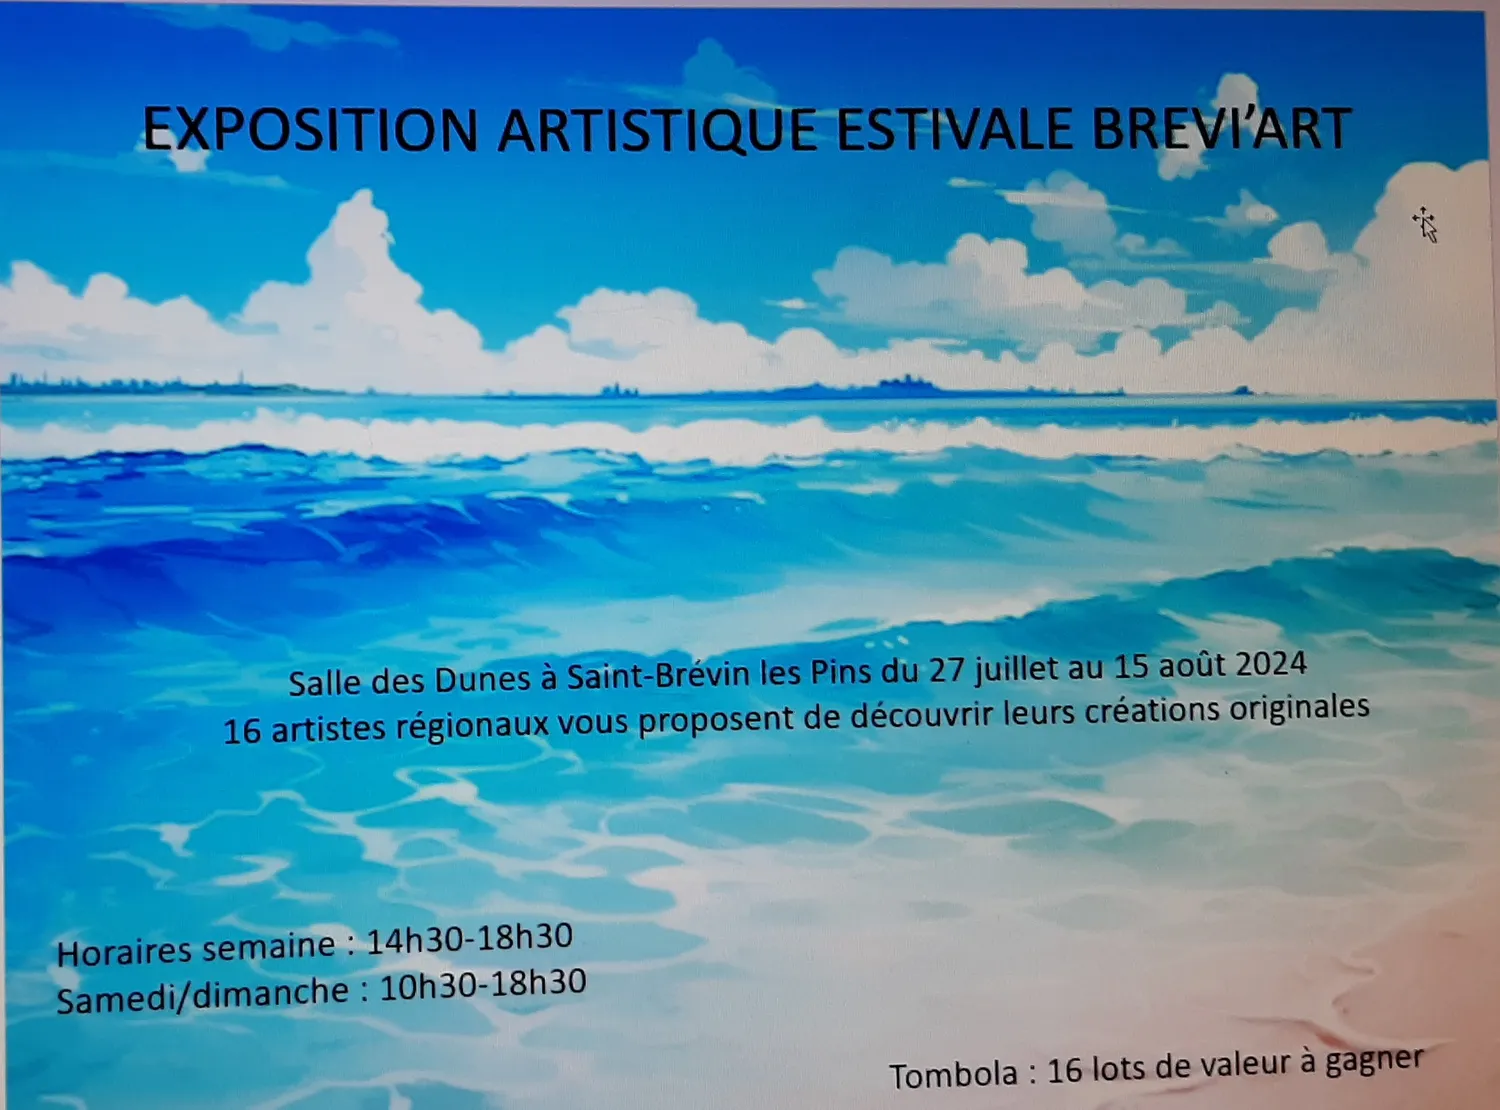 Image qui illustre: Exposition Artistique Estivale Brevi'art à Saint-Brevin-les-Pins - 2